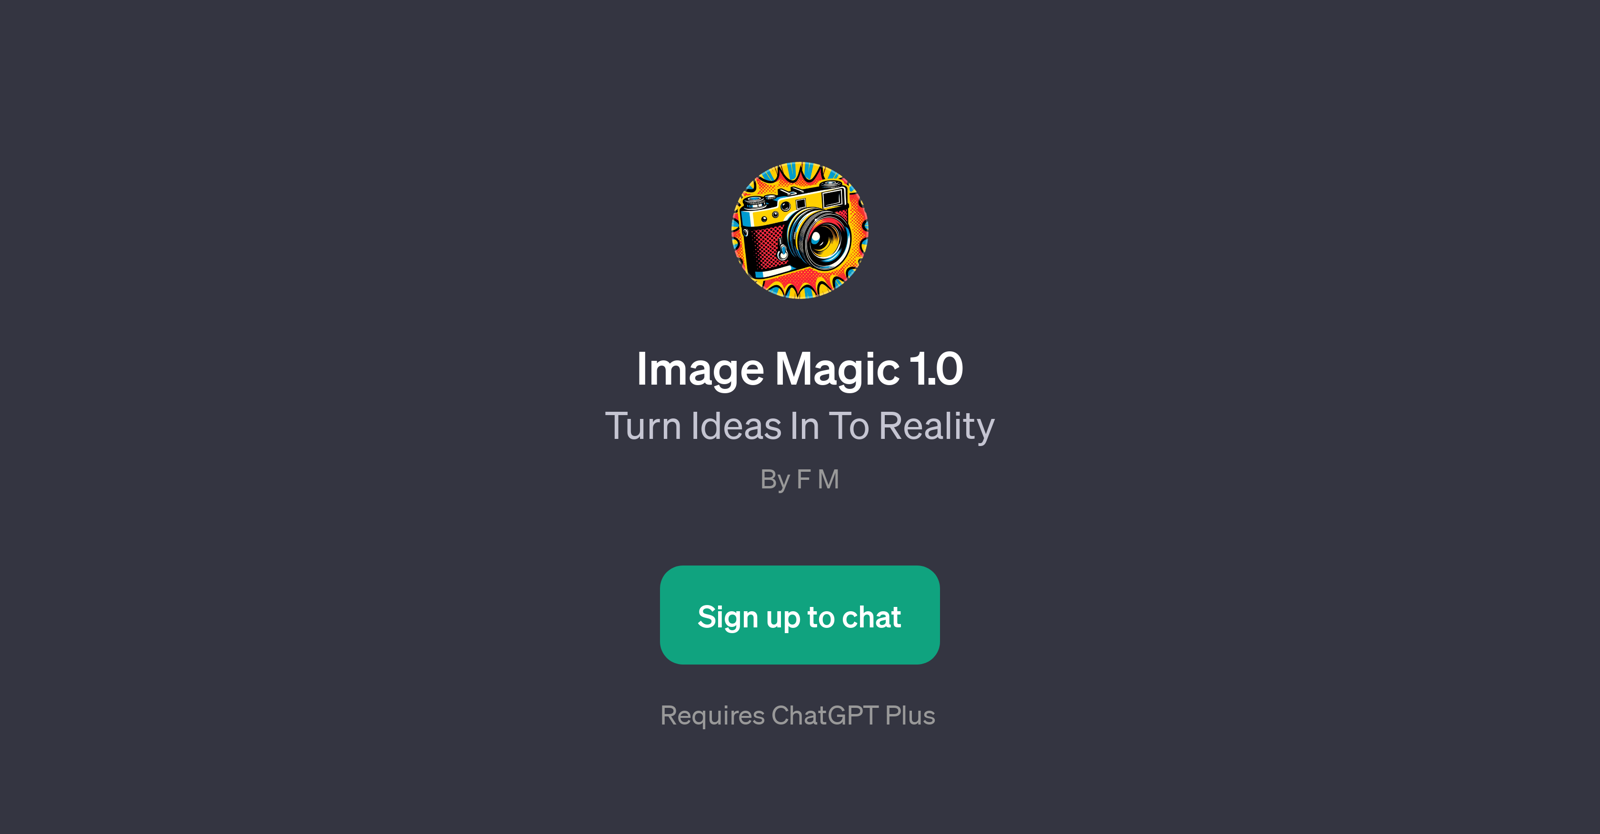 Image Magic 1.0 website